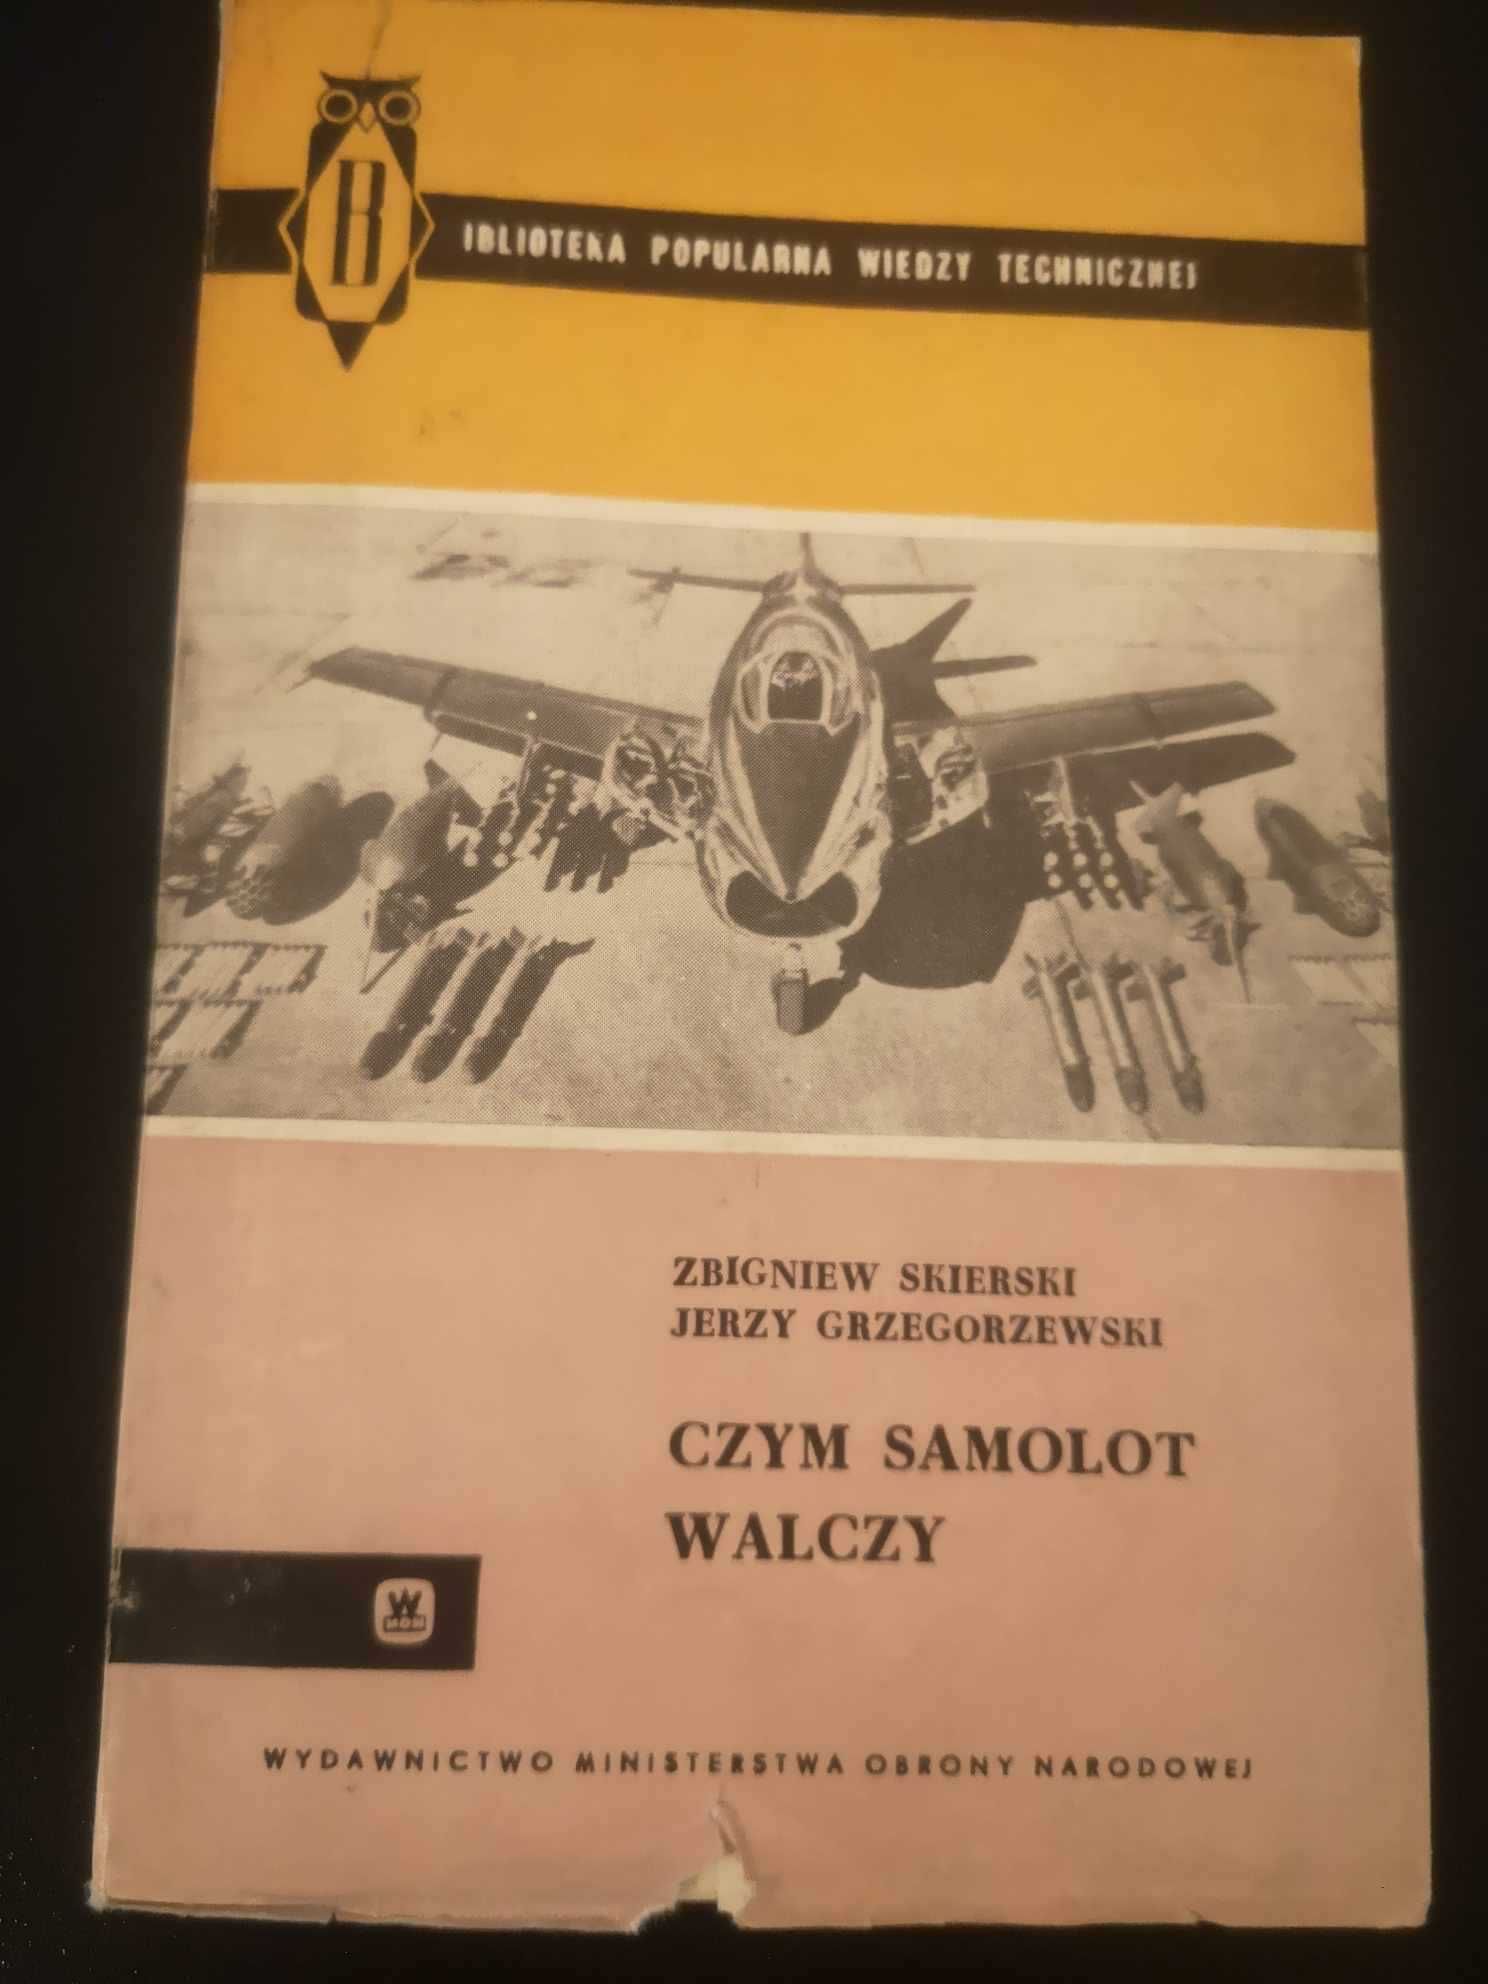 Czym samolot walczy - Zbigniew Skierski i Jerzy Grzegorzewski 1961